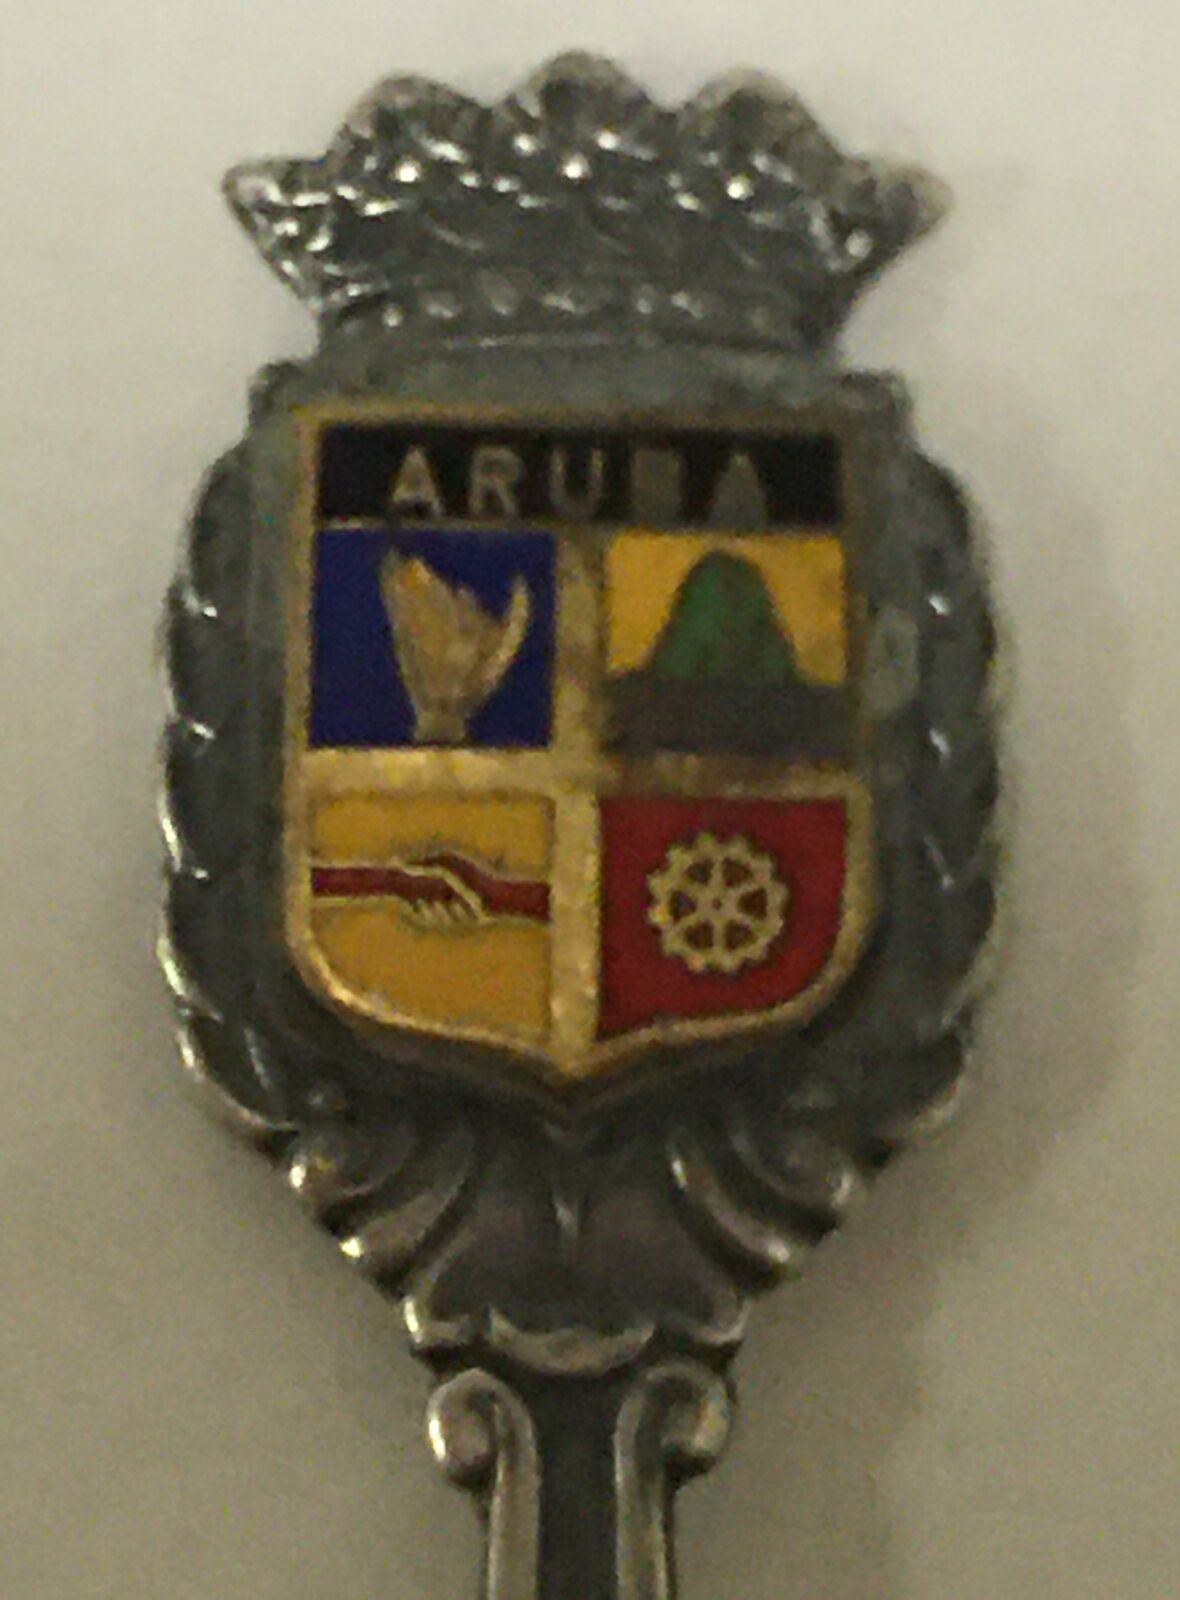 Aruba Vintage Souvenir Spoon Collectible